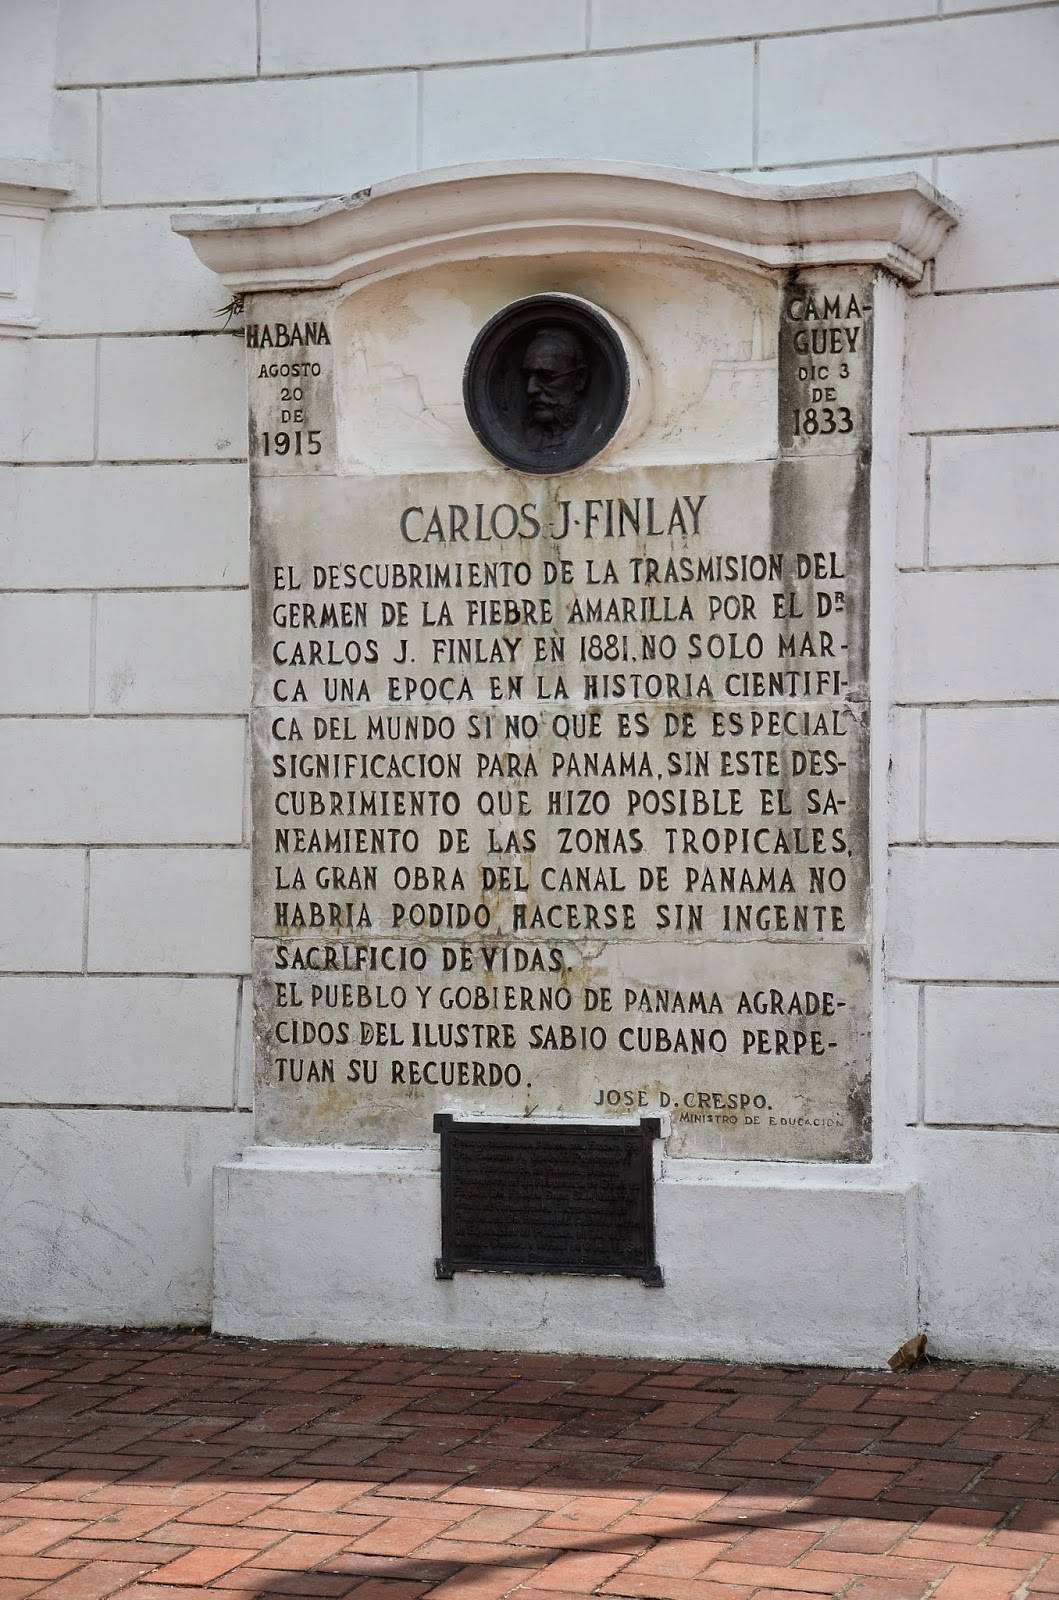 Monument to Carlos Finlay at Plaza de Francia in Casco Viejo, Panama City